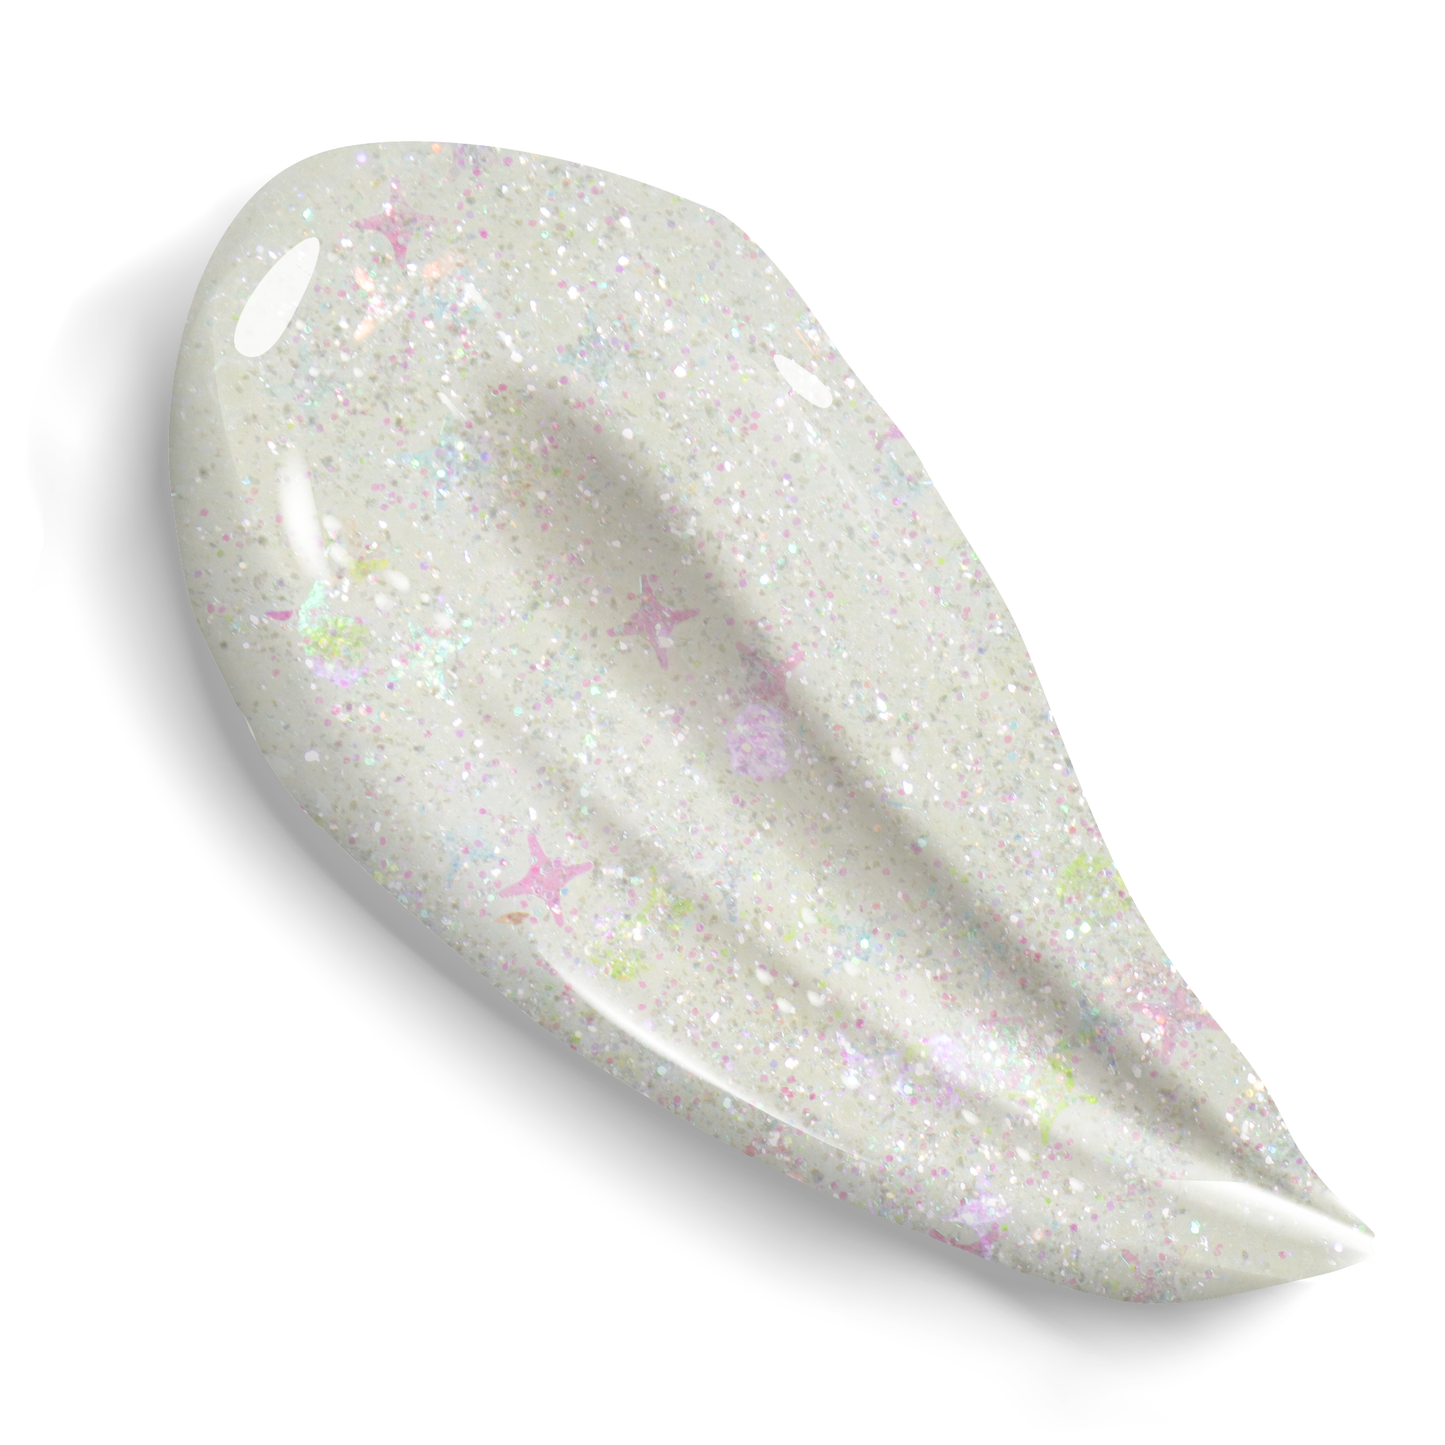 [GOOLITTER] Angel Booger 2oz (60mL) Holographic Fine Glitter Gel